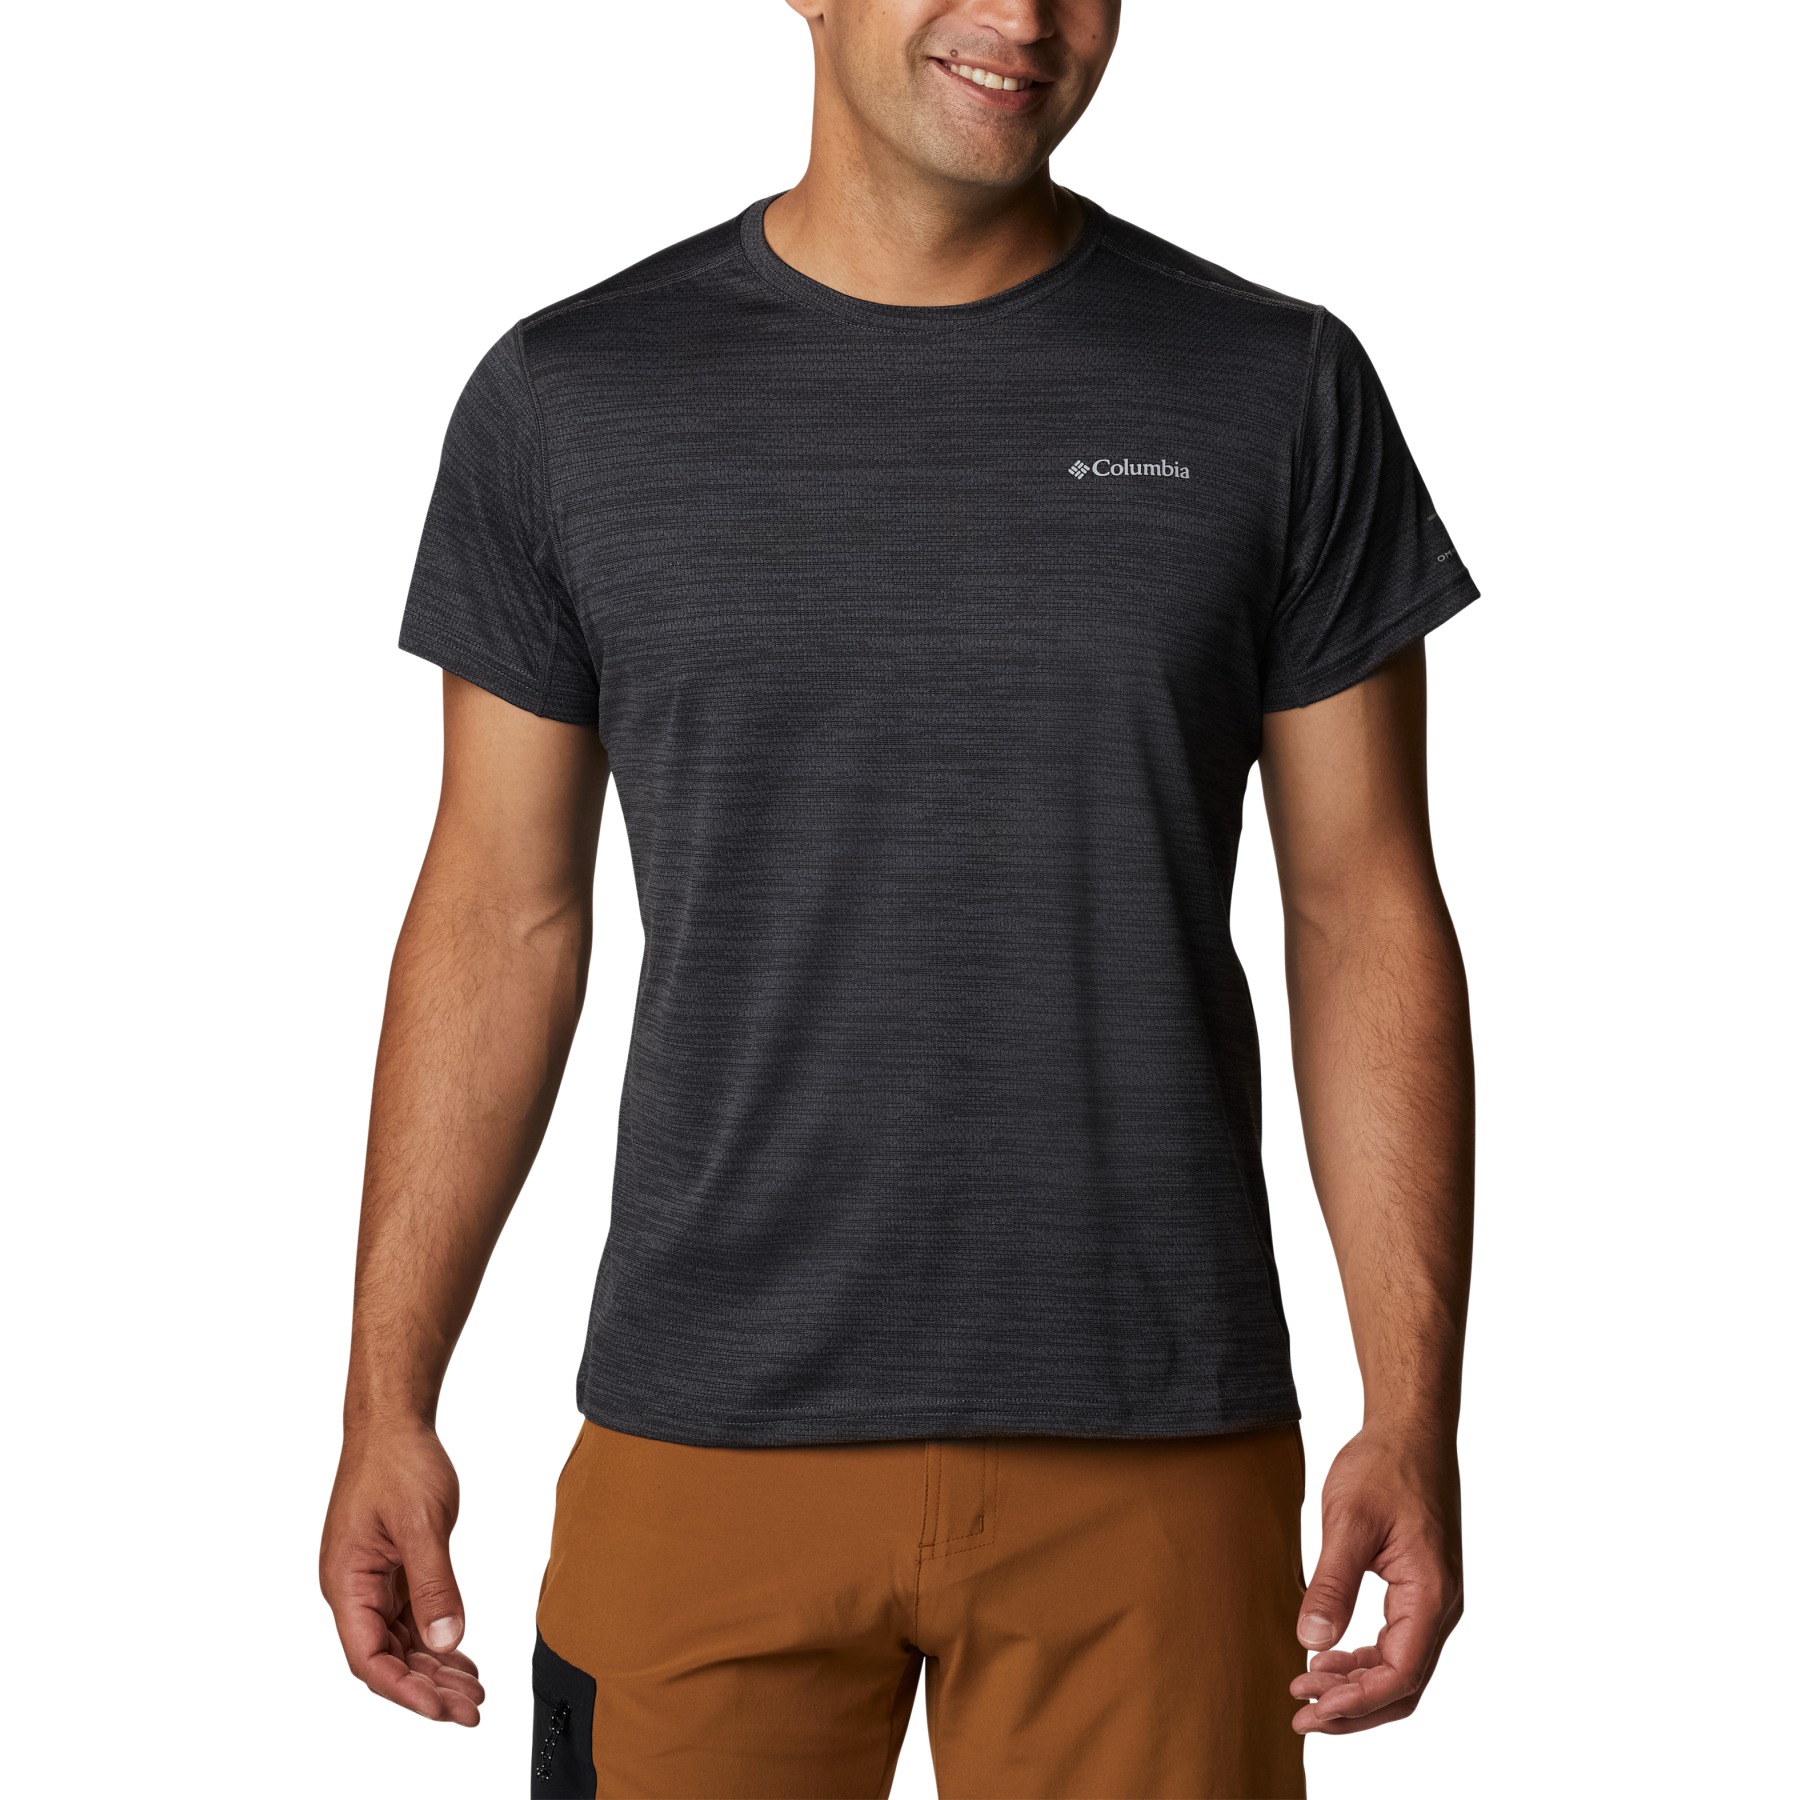 Produktbild von Columbia Alpine Chill Zero Crew T-Shirt Herren - Black Heather